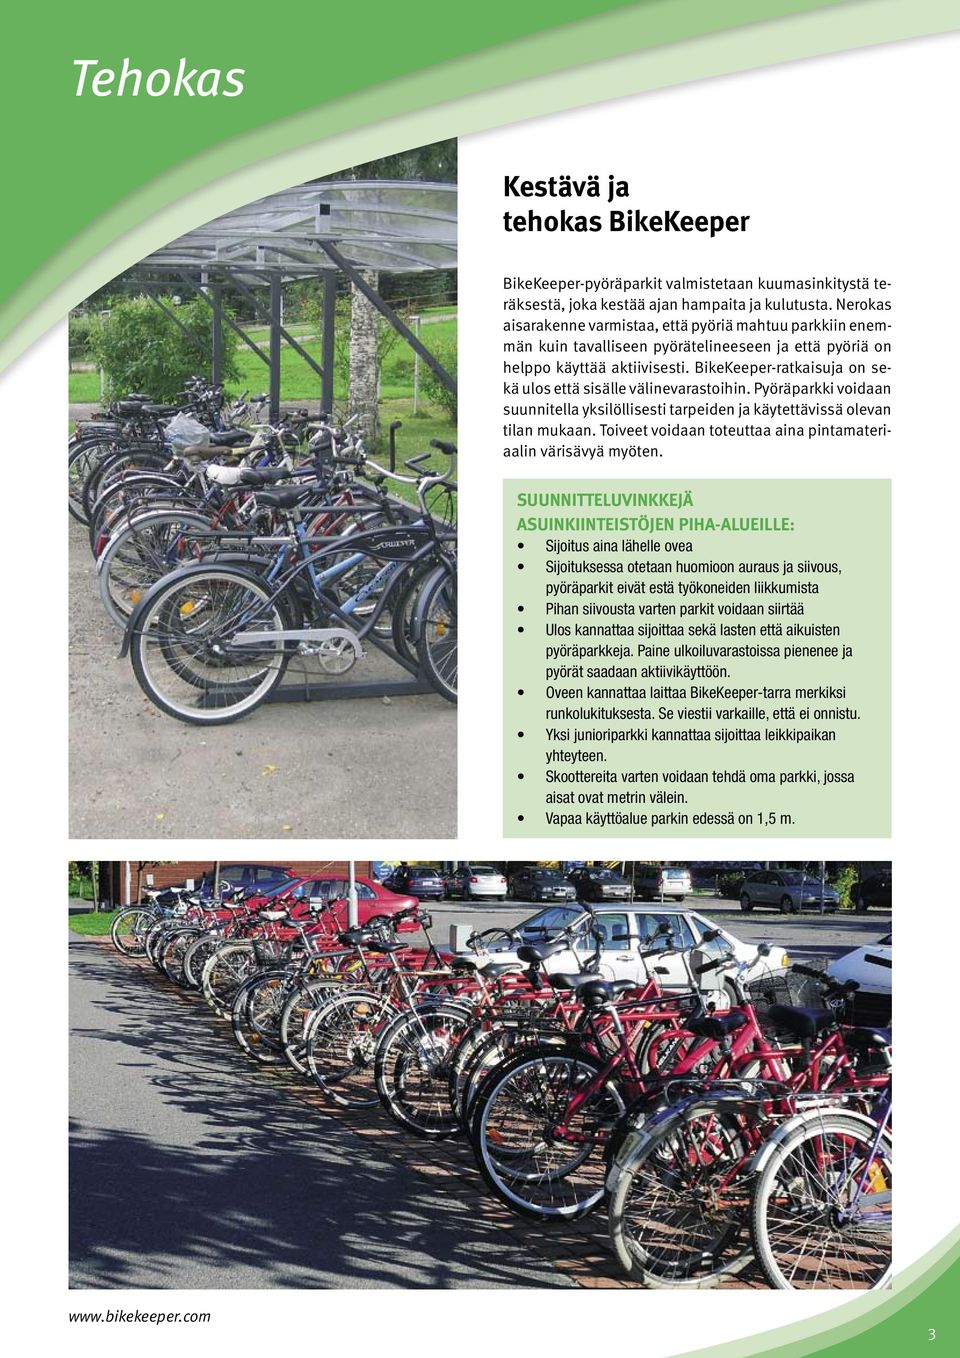 BikeKeeper-ratkaisuja on sekä ulos että sisälle välinevarastoihin. Pyöräparkki voidaan suunnitella yksilöllisesti tarpeiden ja käytettävissä olevan tilan mukaan.